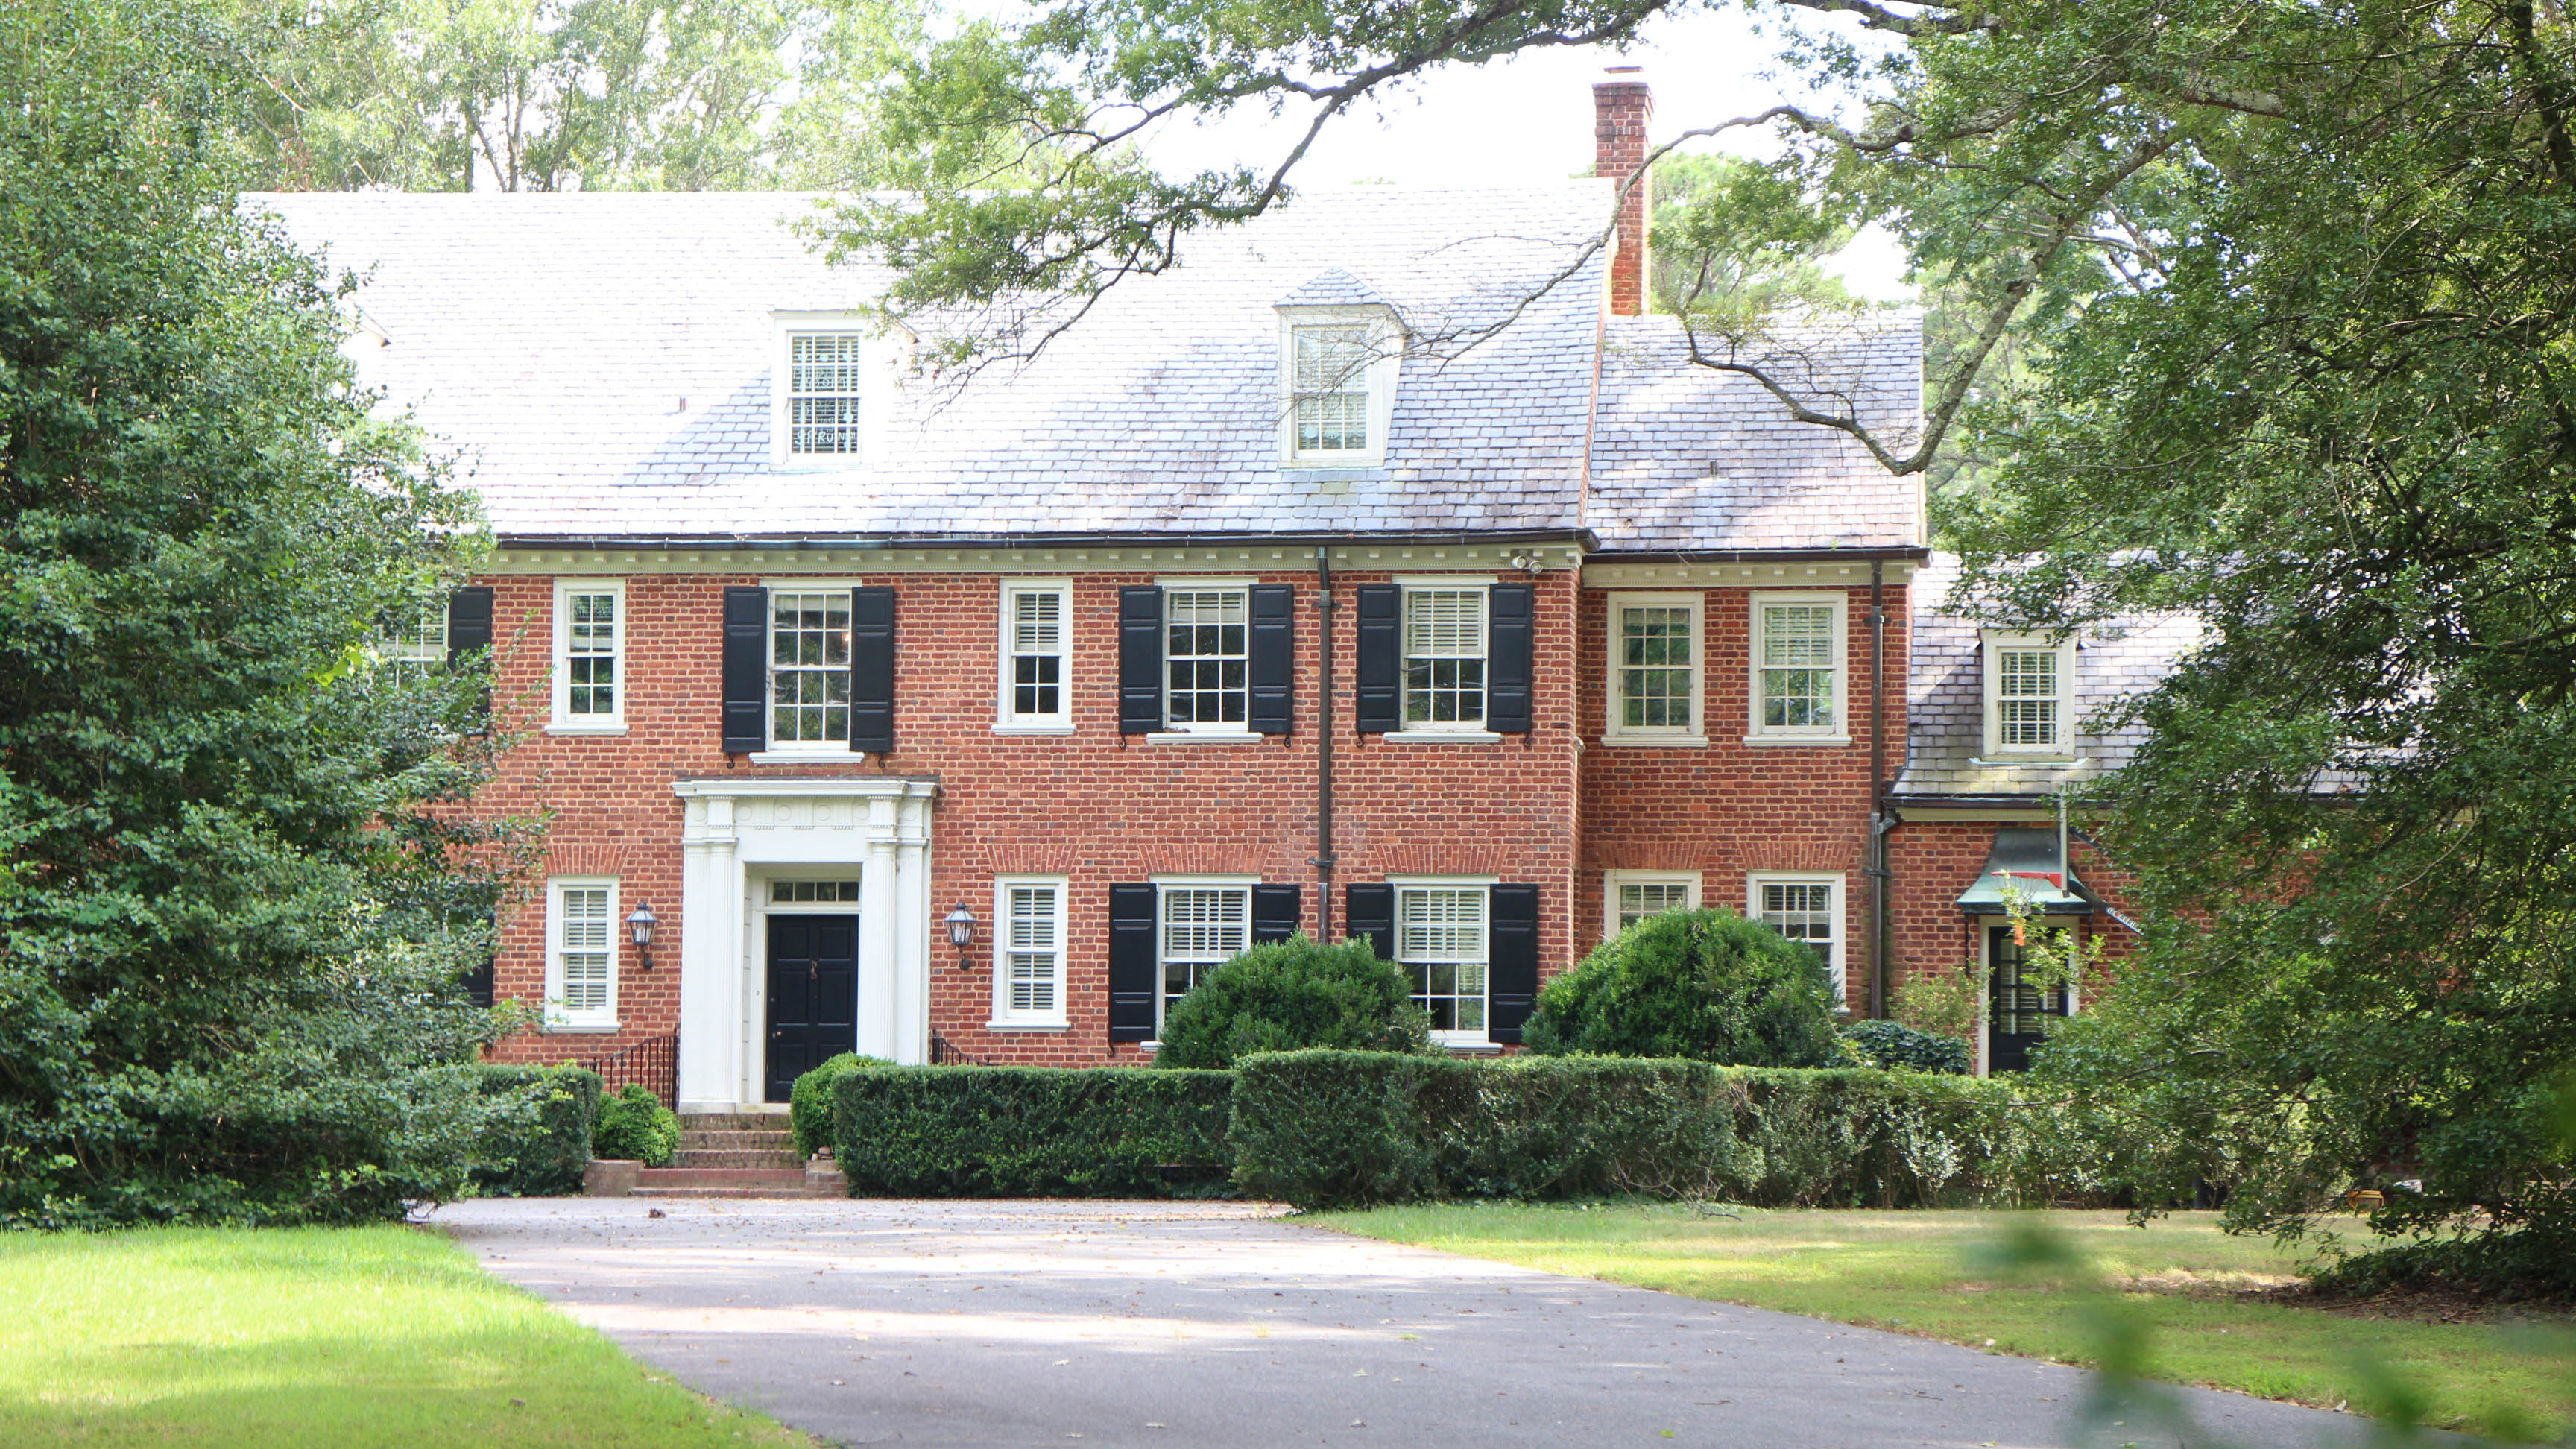 Goodwin grabs Henrico mansion for $5.5M - Richmond BizSense